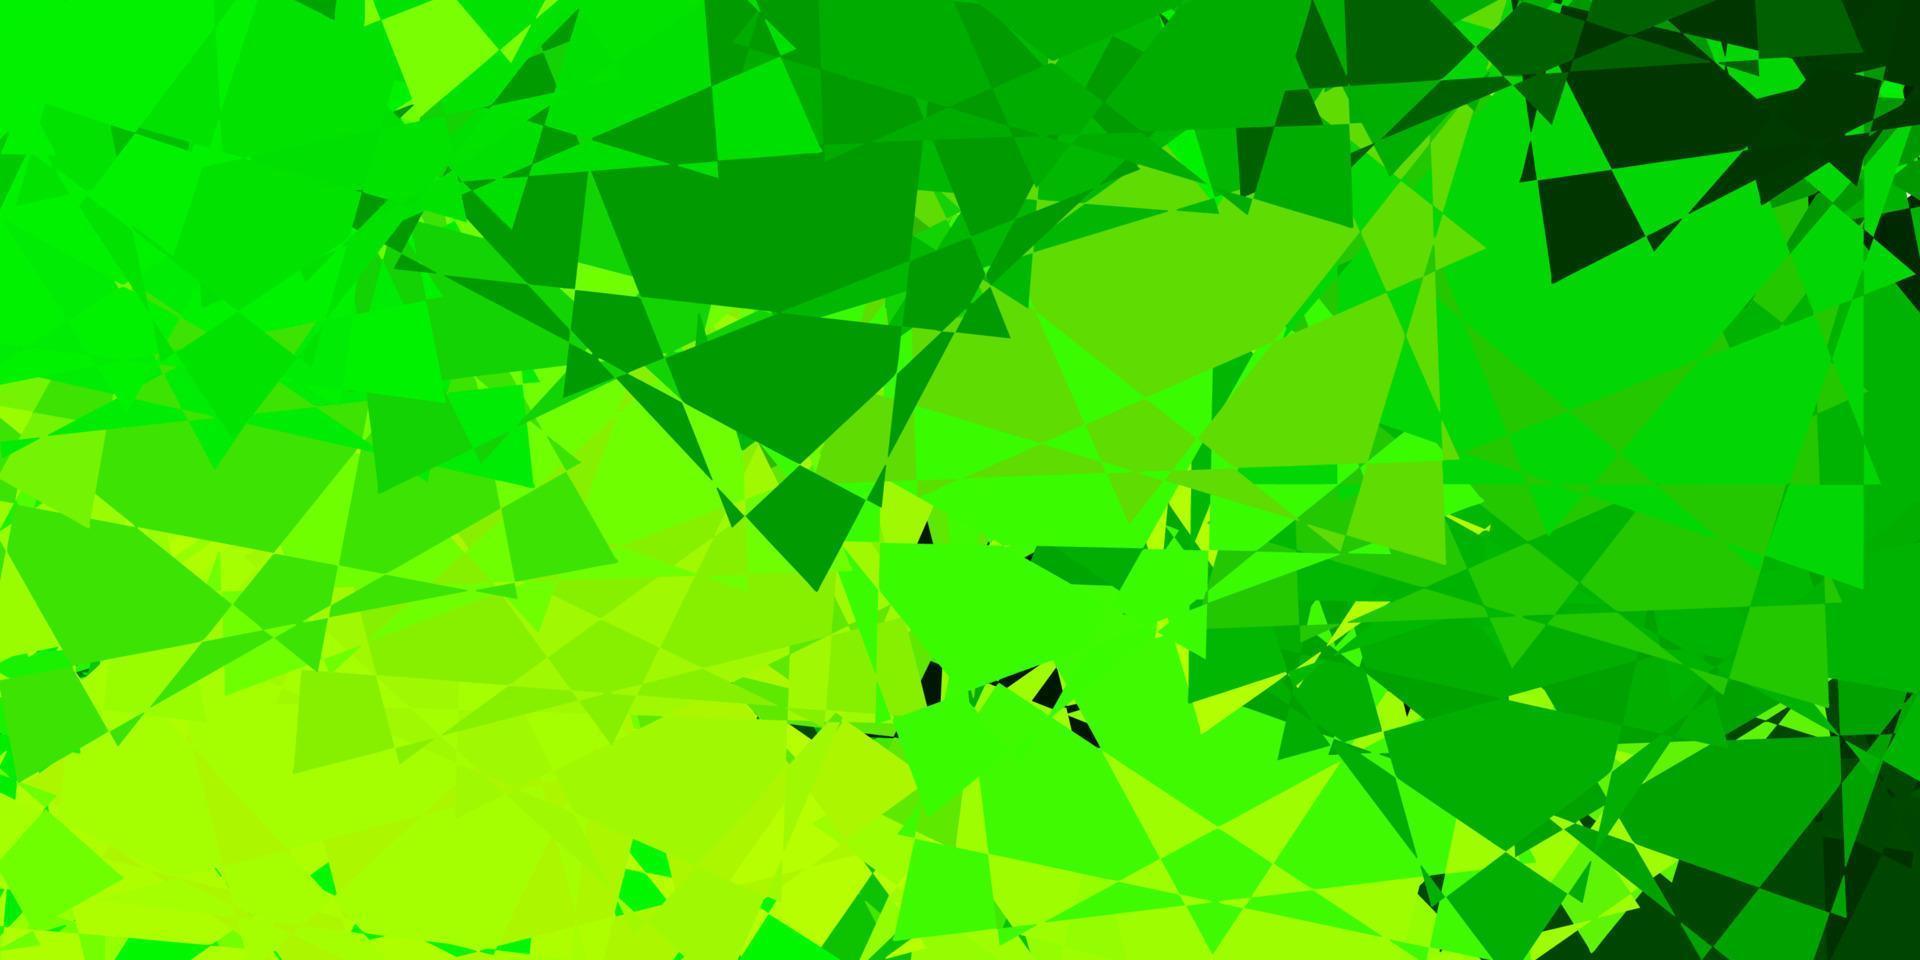 modelo de vetor verde e amarelo claro com formas de triângulo.